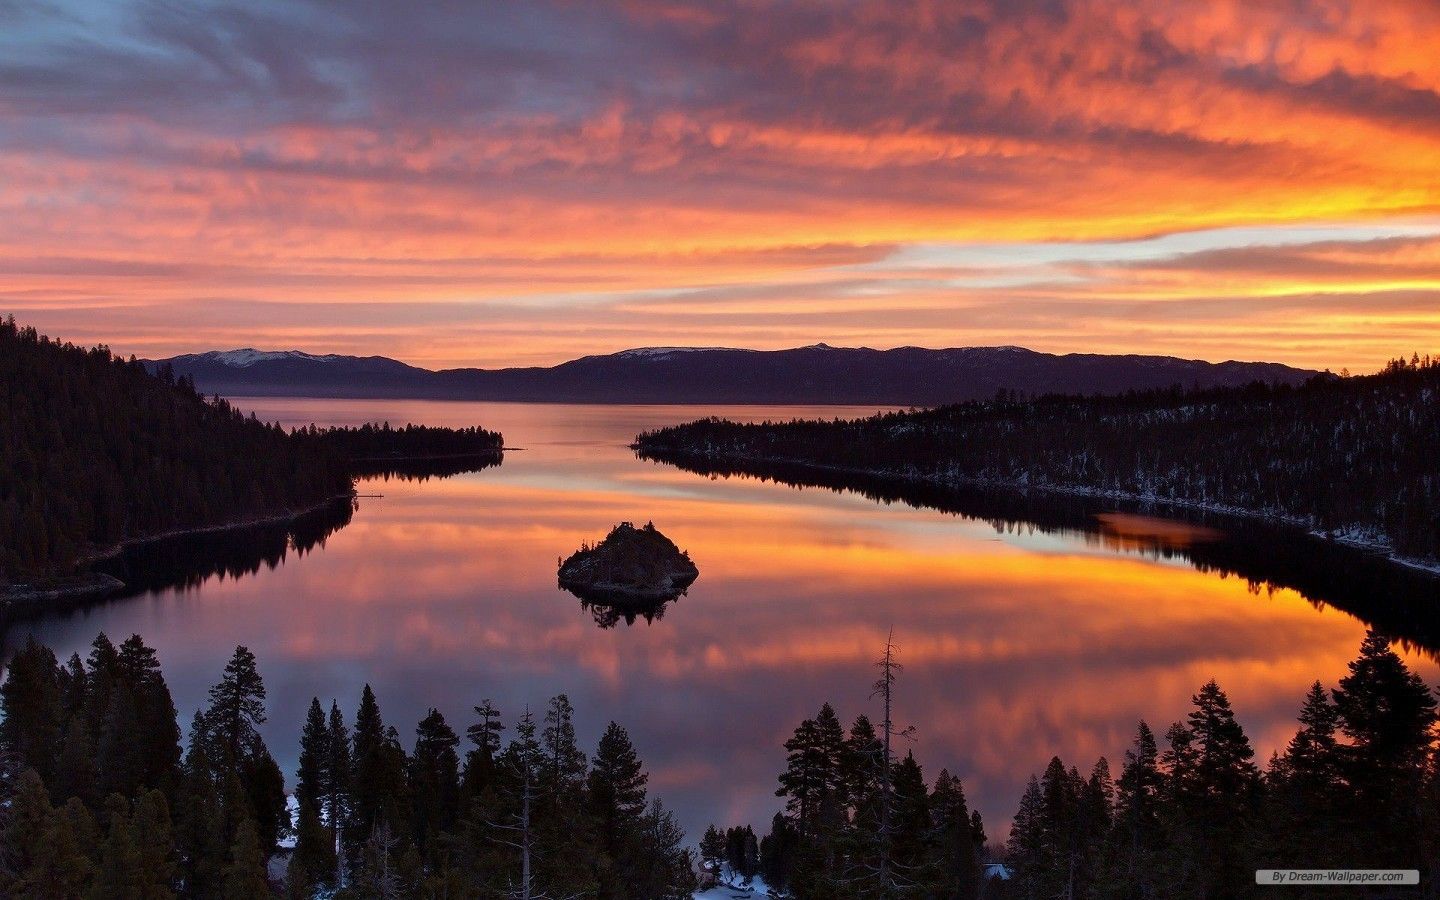 Đây là cơ hội để bạn tải xuống hình nền đẹp miễn phí về hồ Tahoe. Với chất lượng cao, hình nền sống động này sẽ mang đến cho bạn cảm giác như đang thực sự đứng trước hồ nước tuyệt đẹp này. Hãy tải xuống ngay để thưởng thức mà không mất tiền bạc!